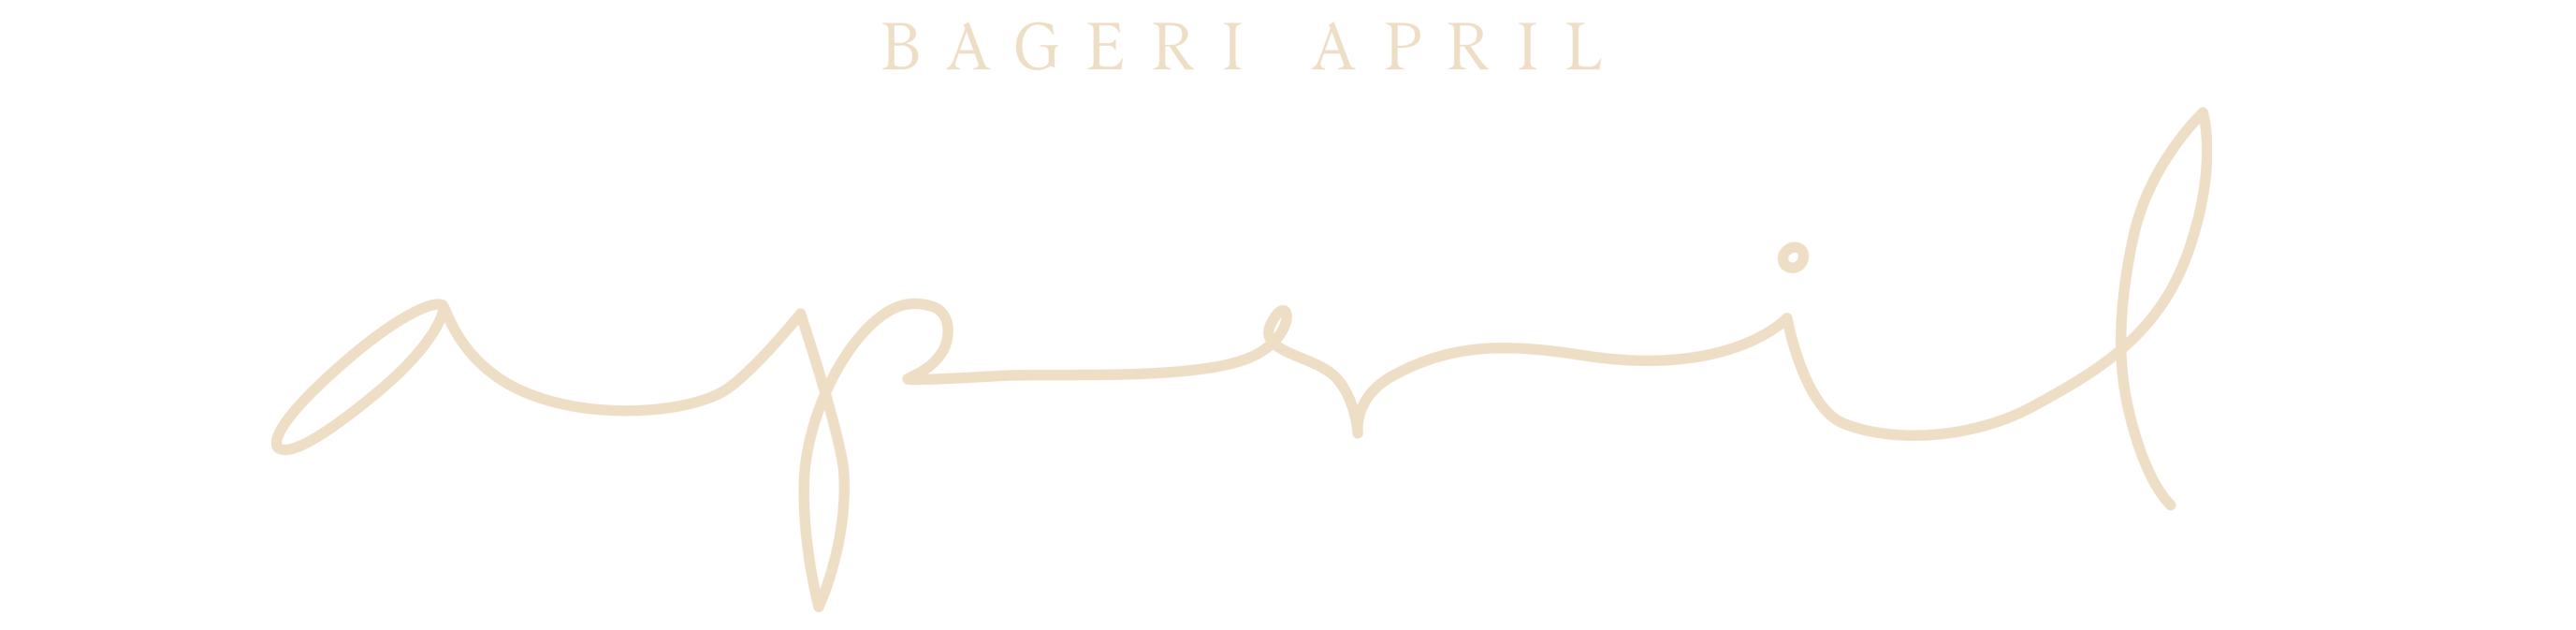 Bageri April